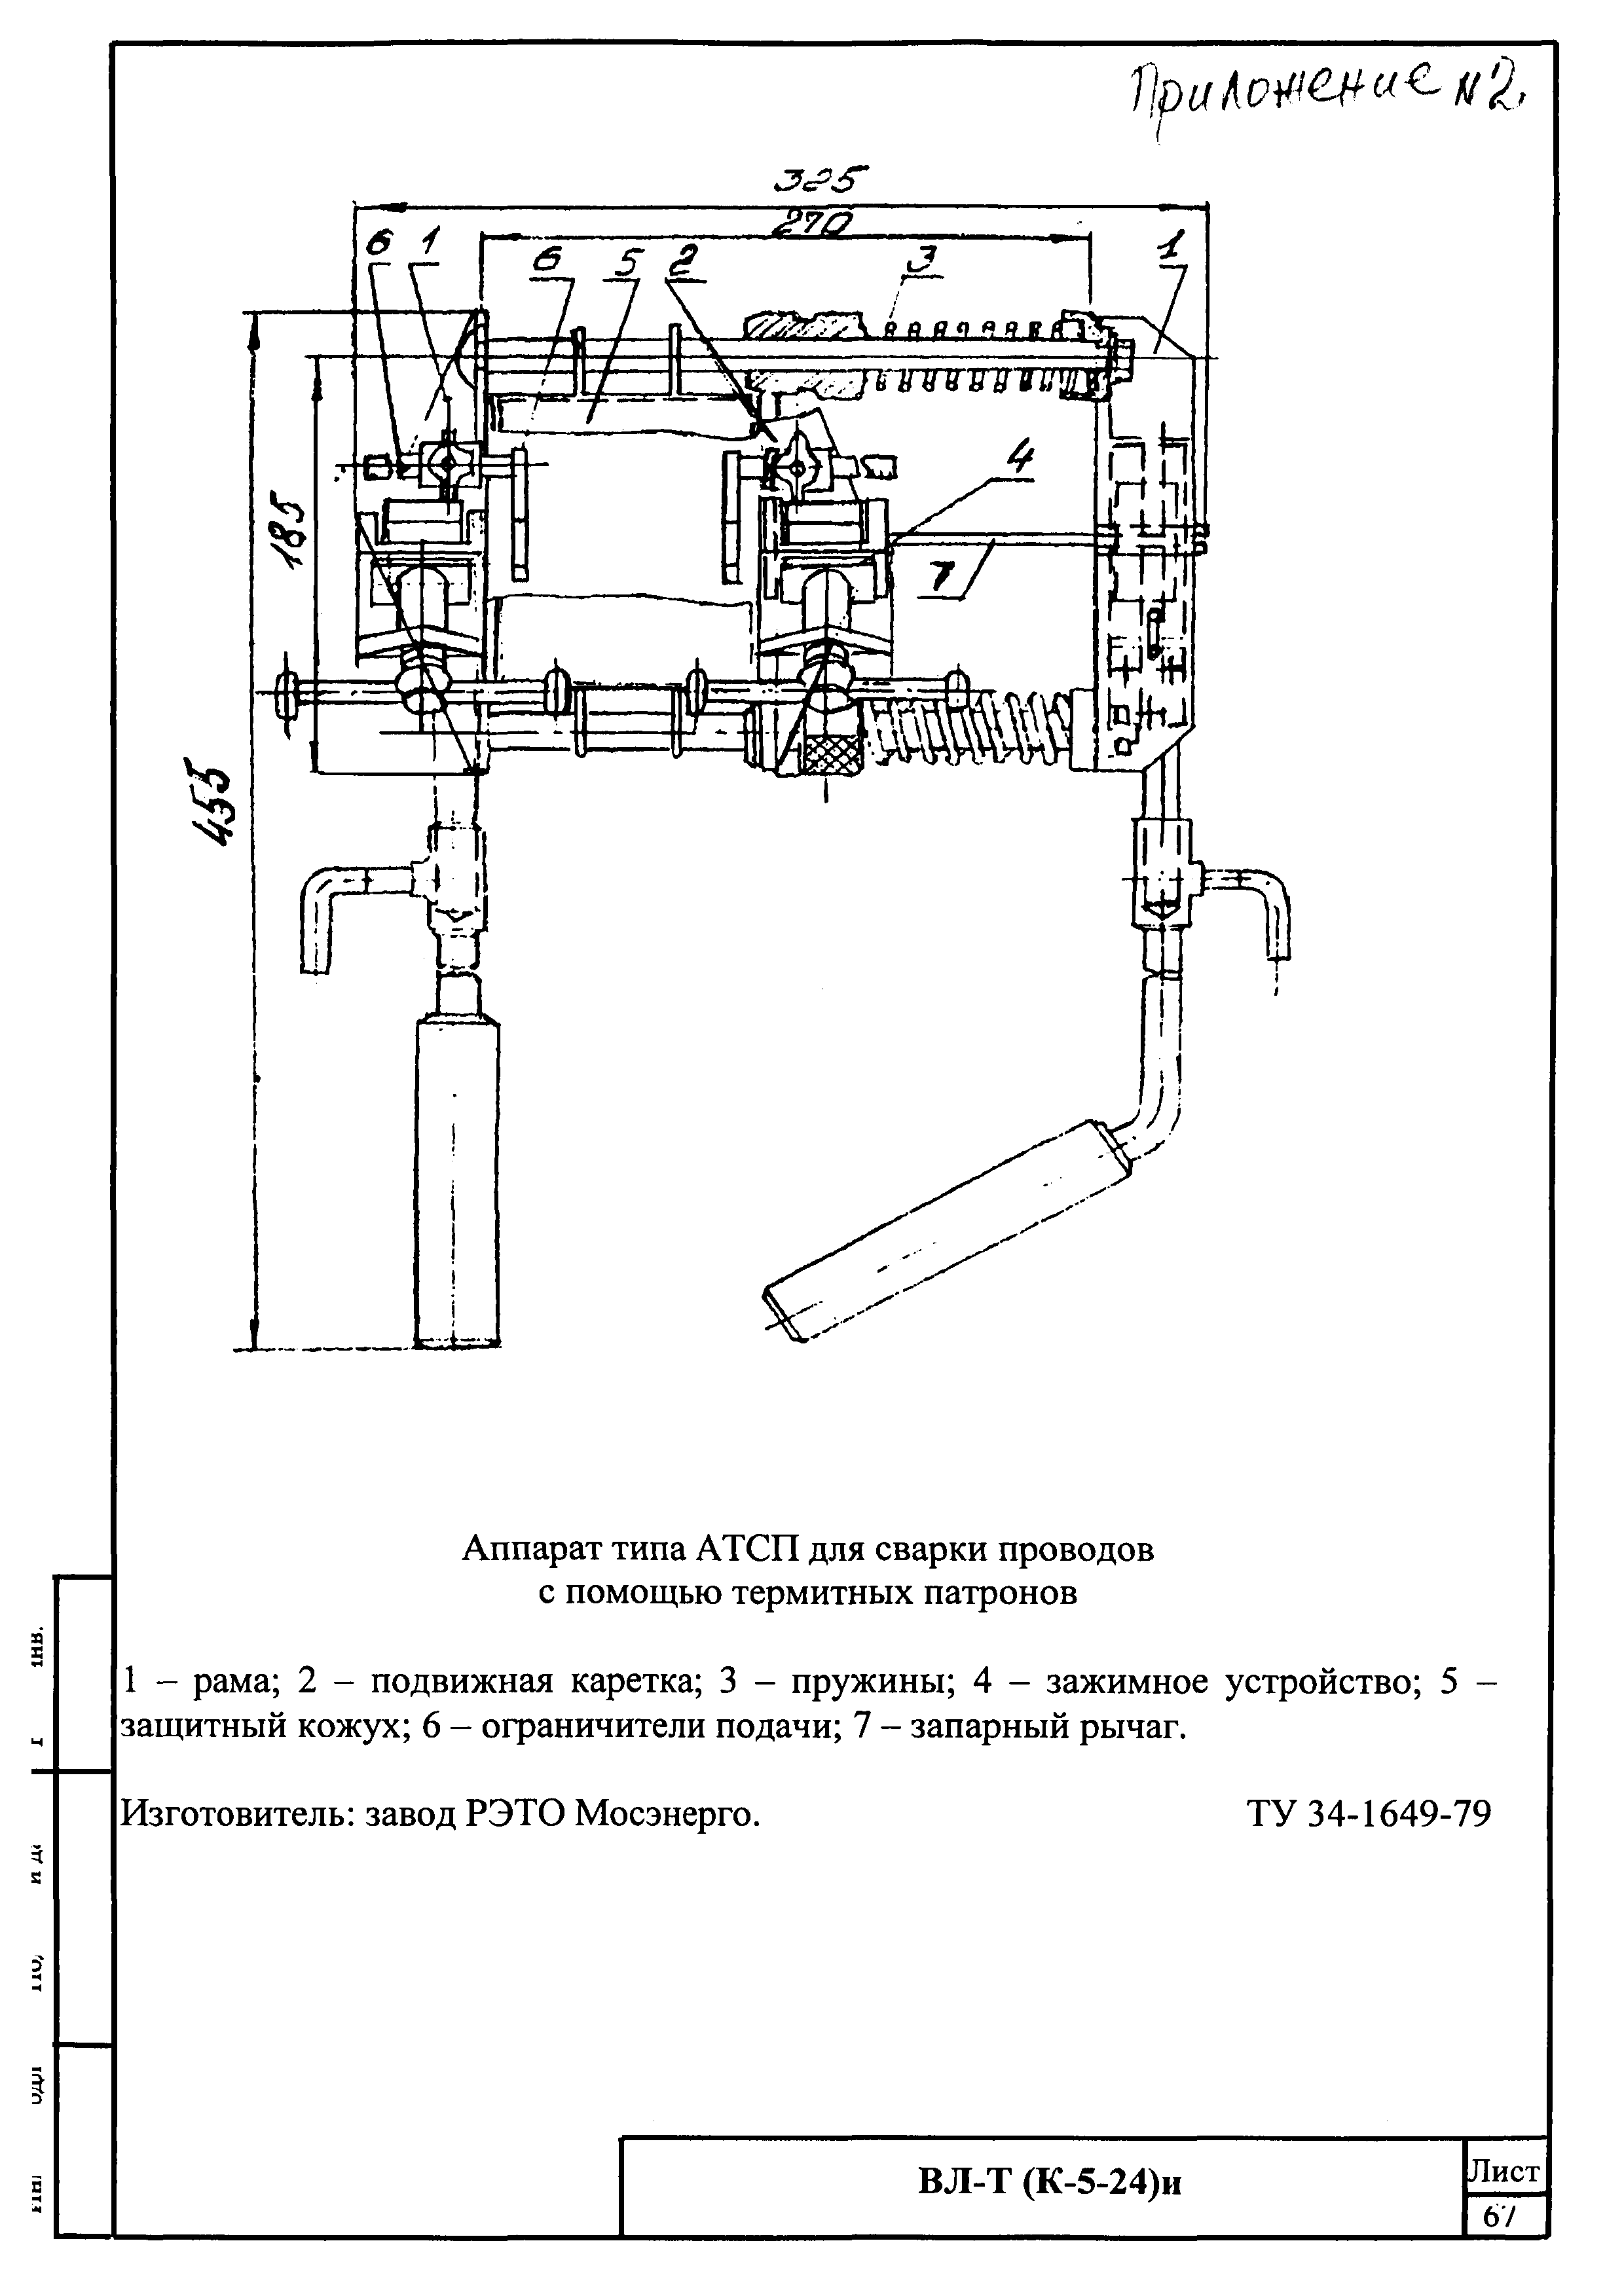 Технологическая карта К-5-24-4и